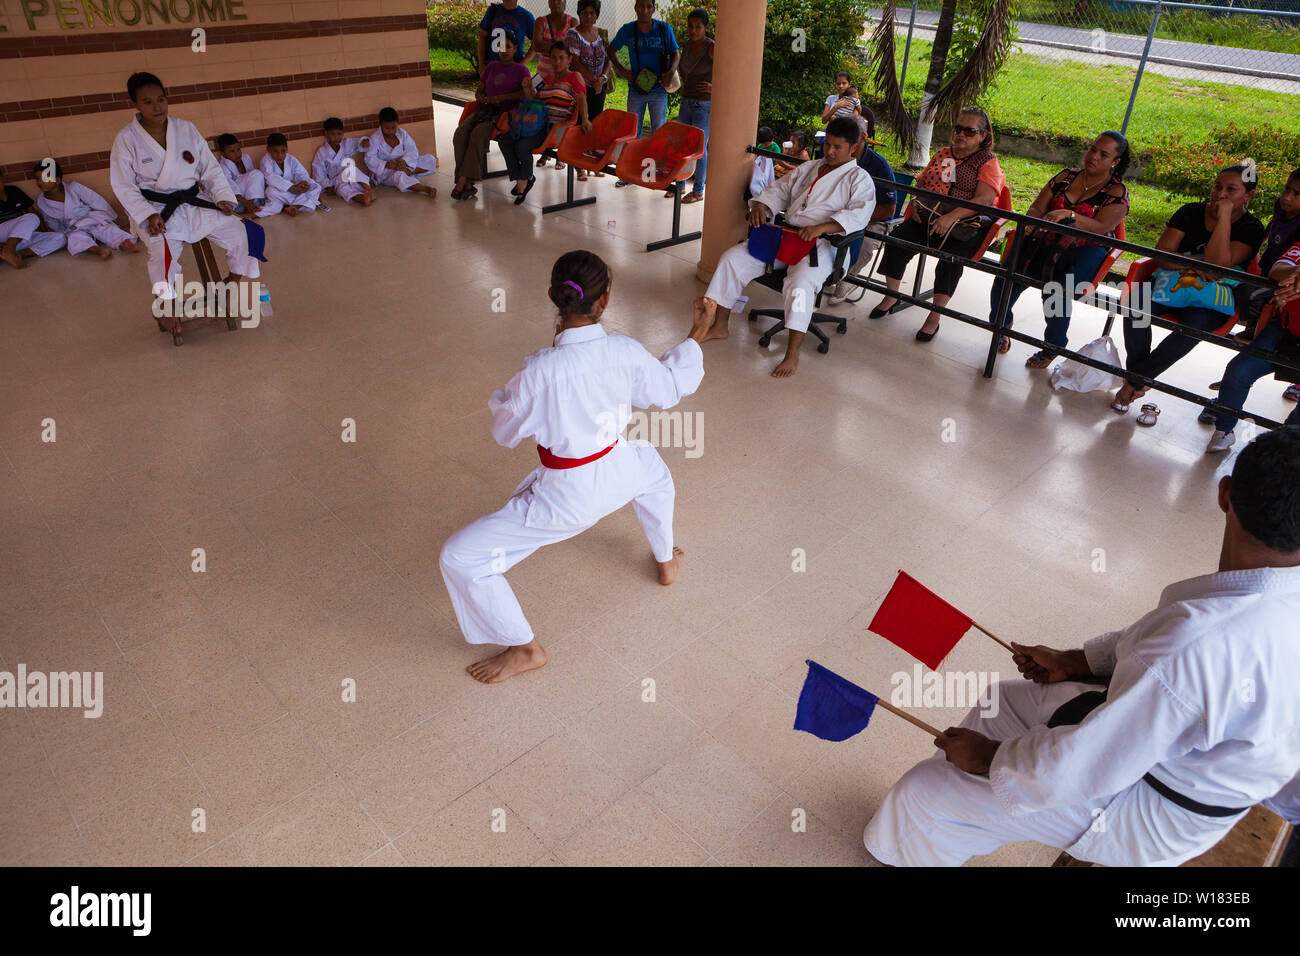 Okinawan Gojo Ryu Karate in Penonome, Provinz Cocle, Republik Panama. Die karate Schule wurde von Sensei Carlos Martinez, der sich im Februar 2017 übergeben. Die Schule wurde ein Teil der IOGKF, International Okinawan Goju Ryu Karate Federation. Oktober, 2013. Stockfoto